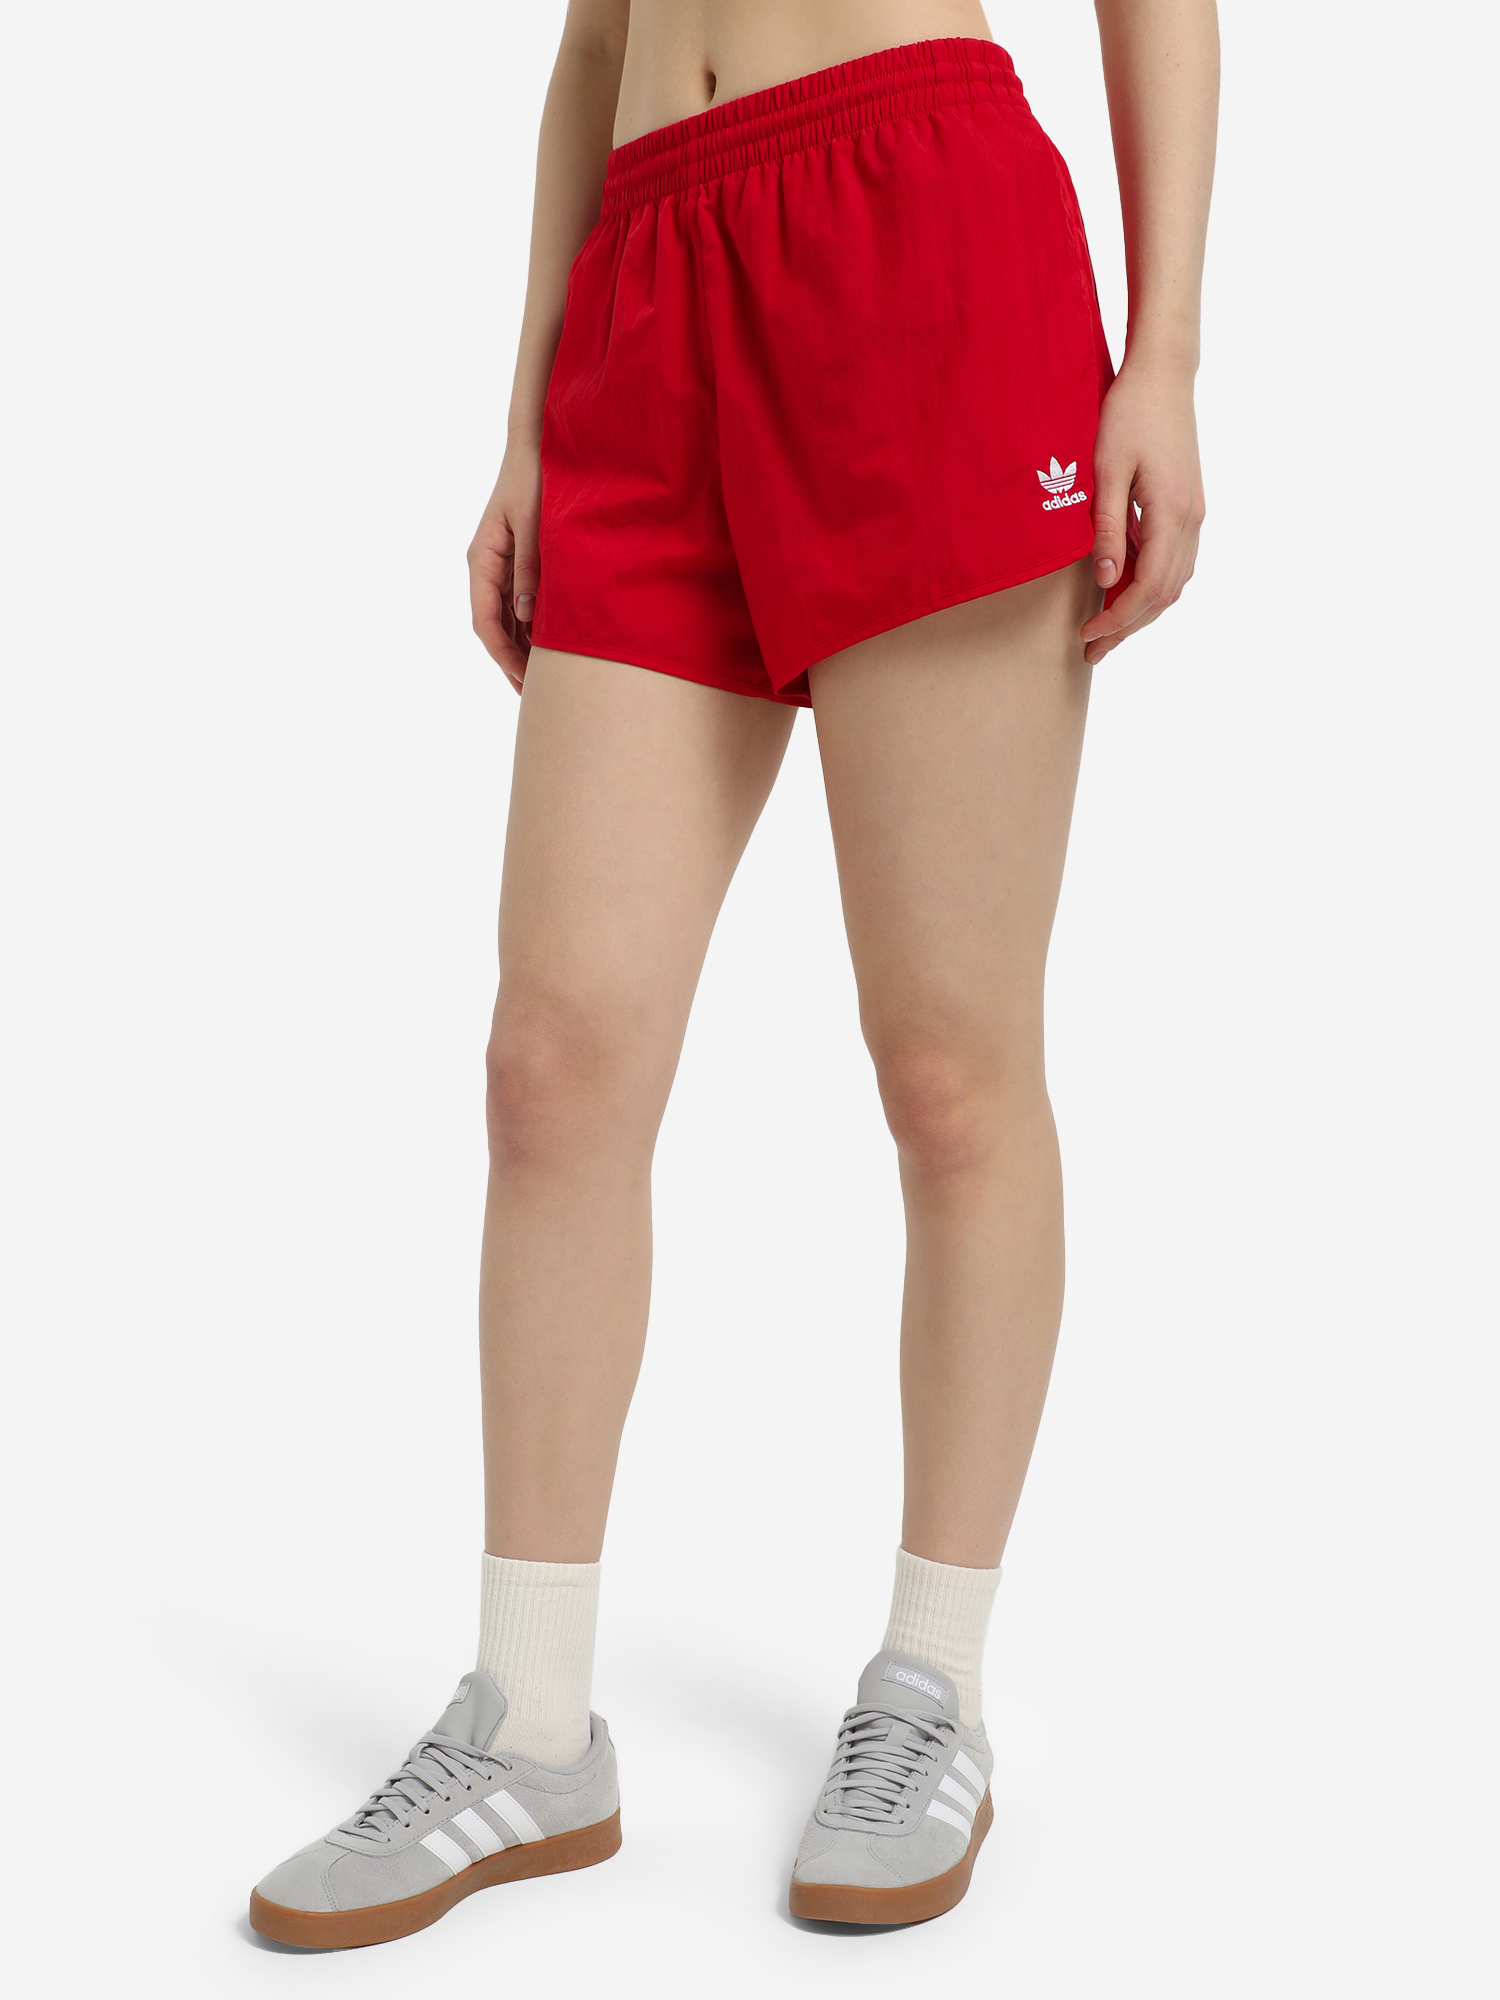 Шорты женские adidas 3-Stripes, Красный